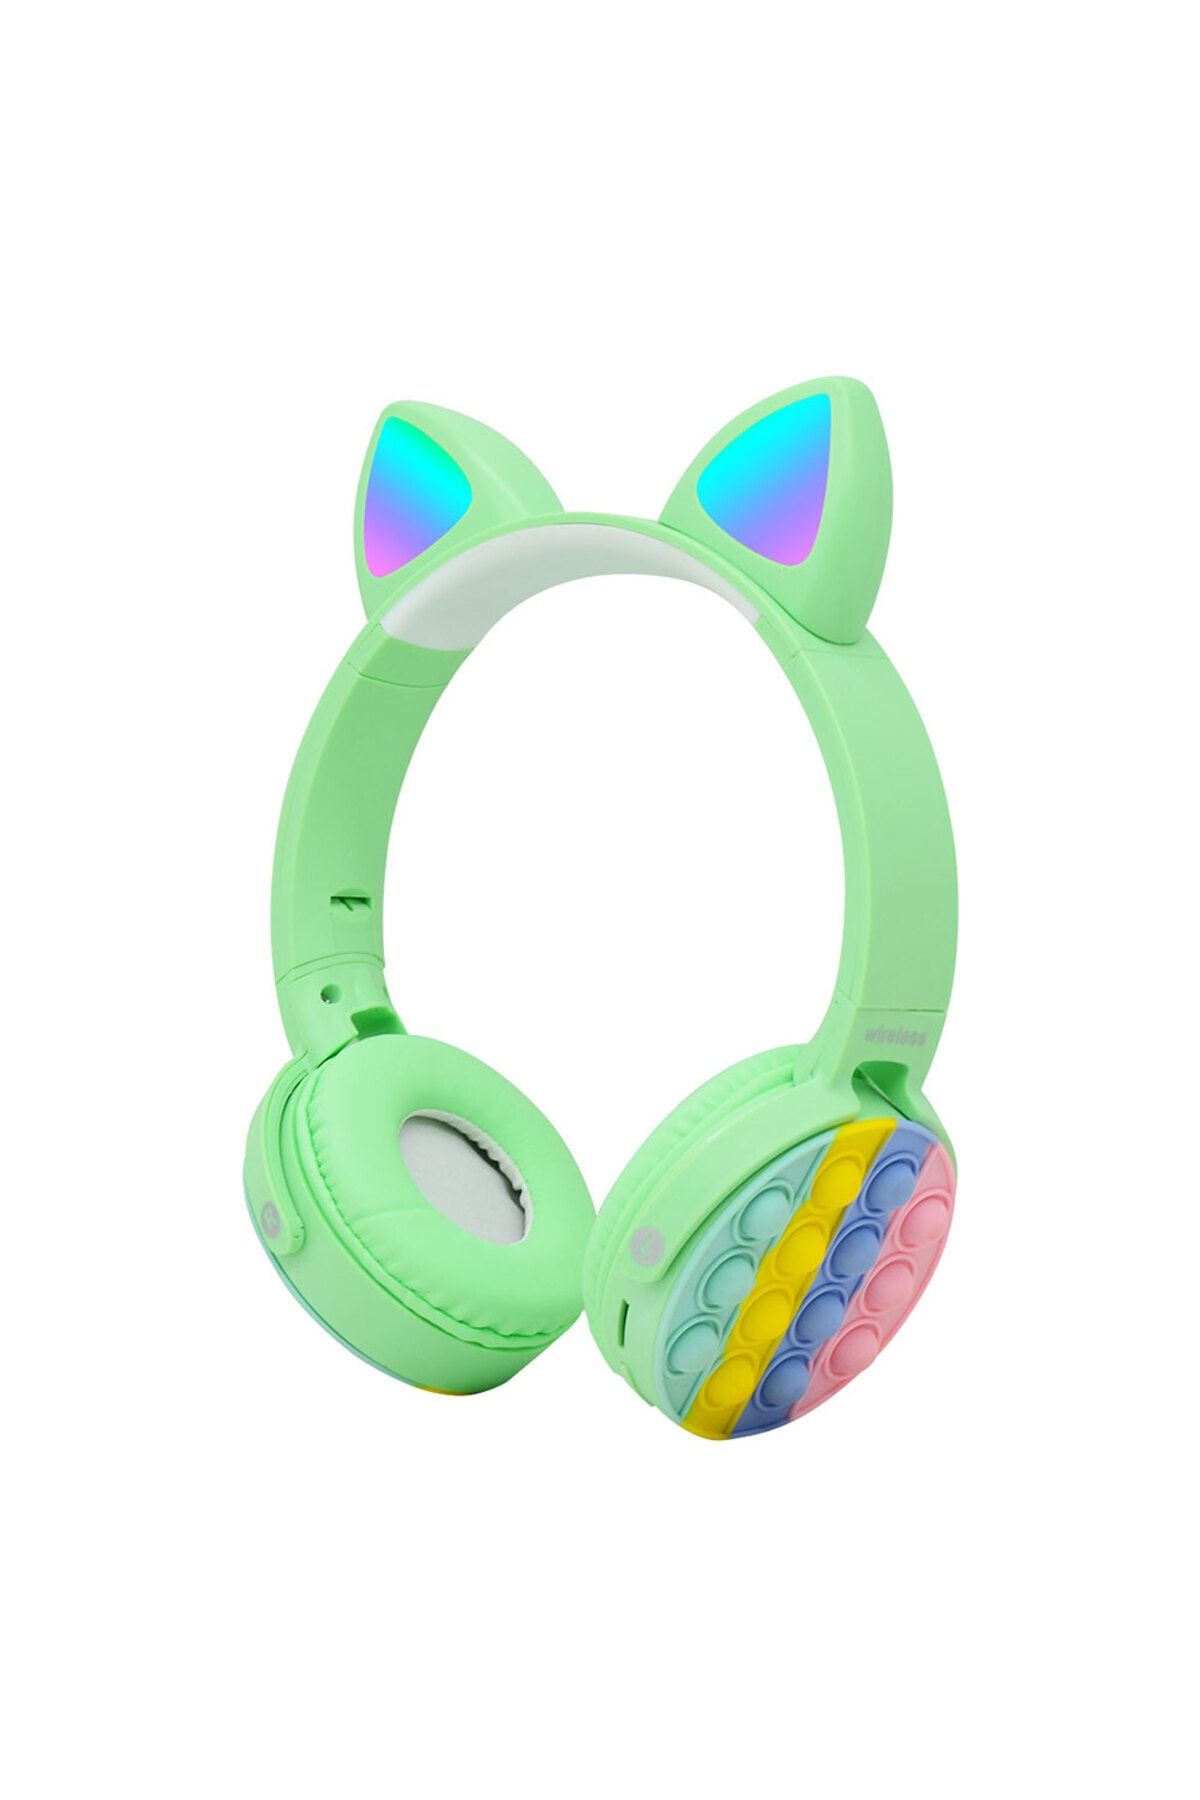 ZMOBILE Kedi Kulaklık Bluetooth Kablosuz Mikrofonlu RGB Renkli Led Işıklı Hafıza Kart Girişli Kulaklık